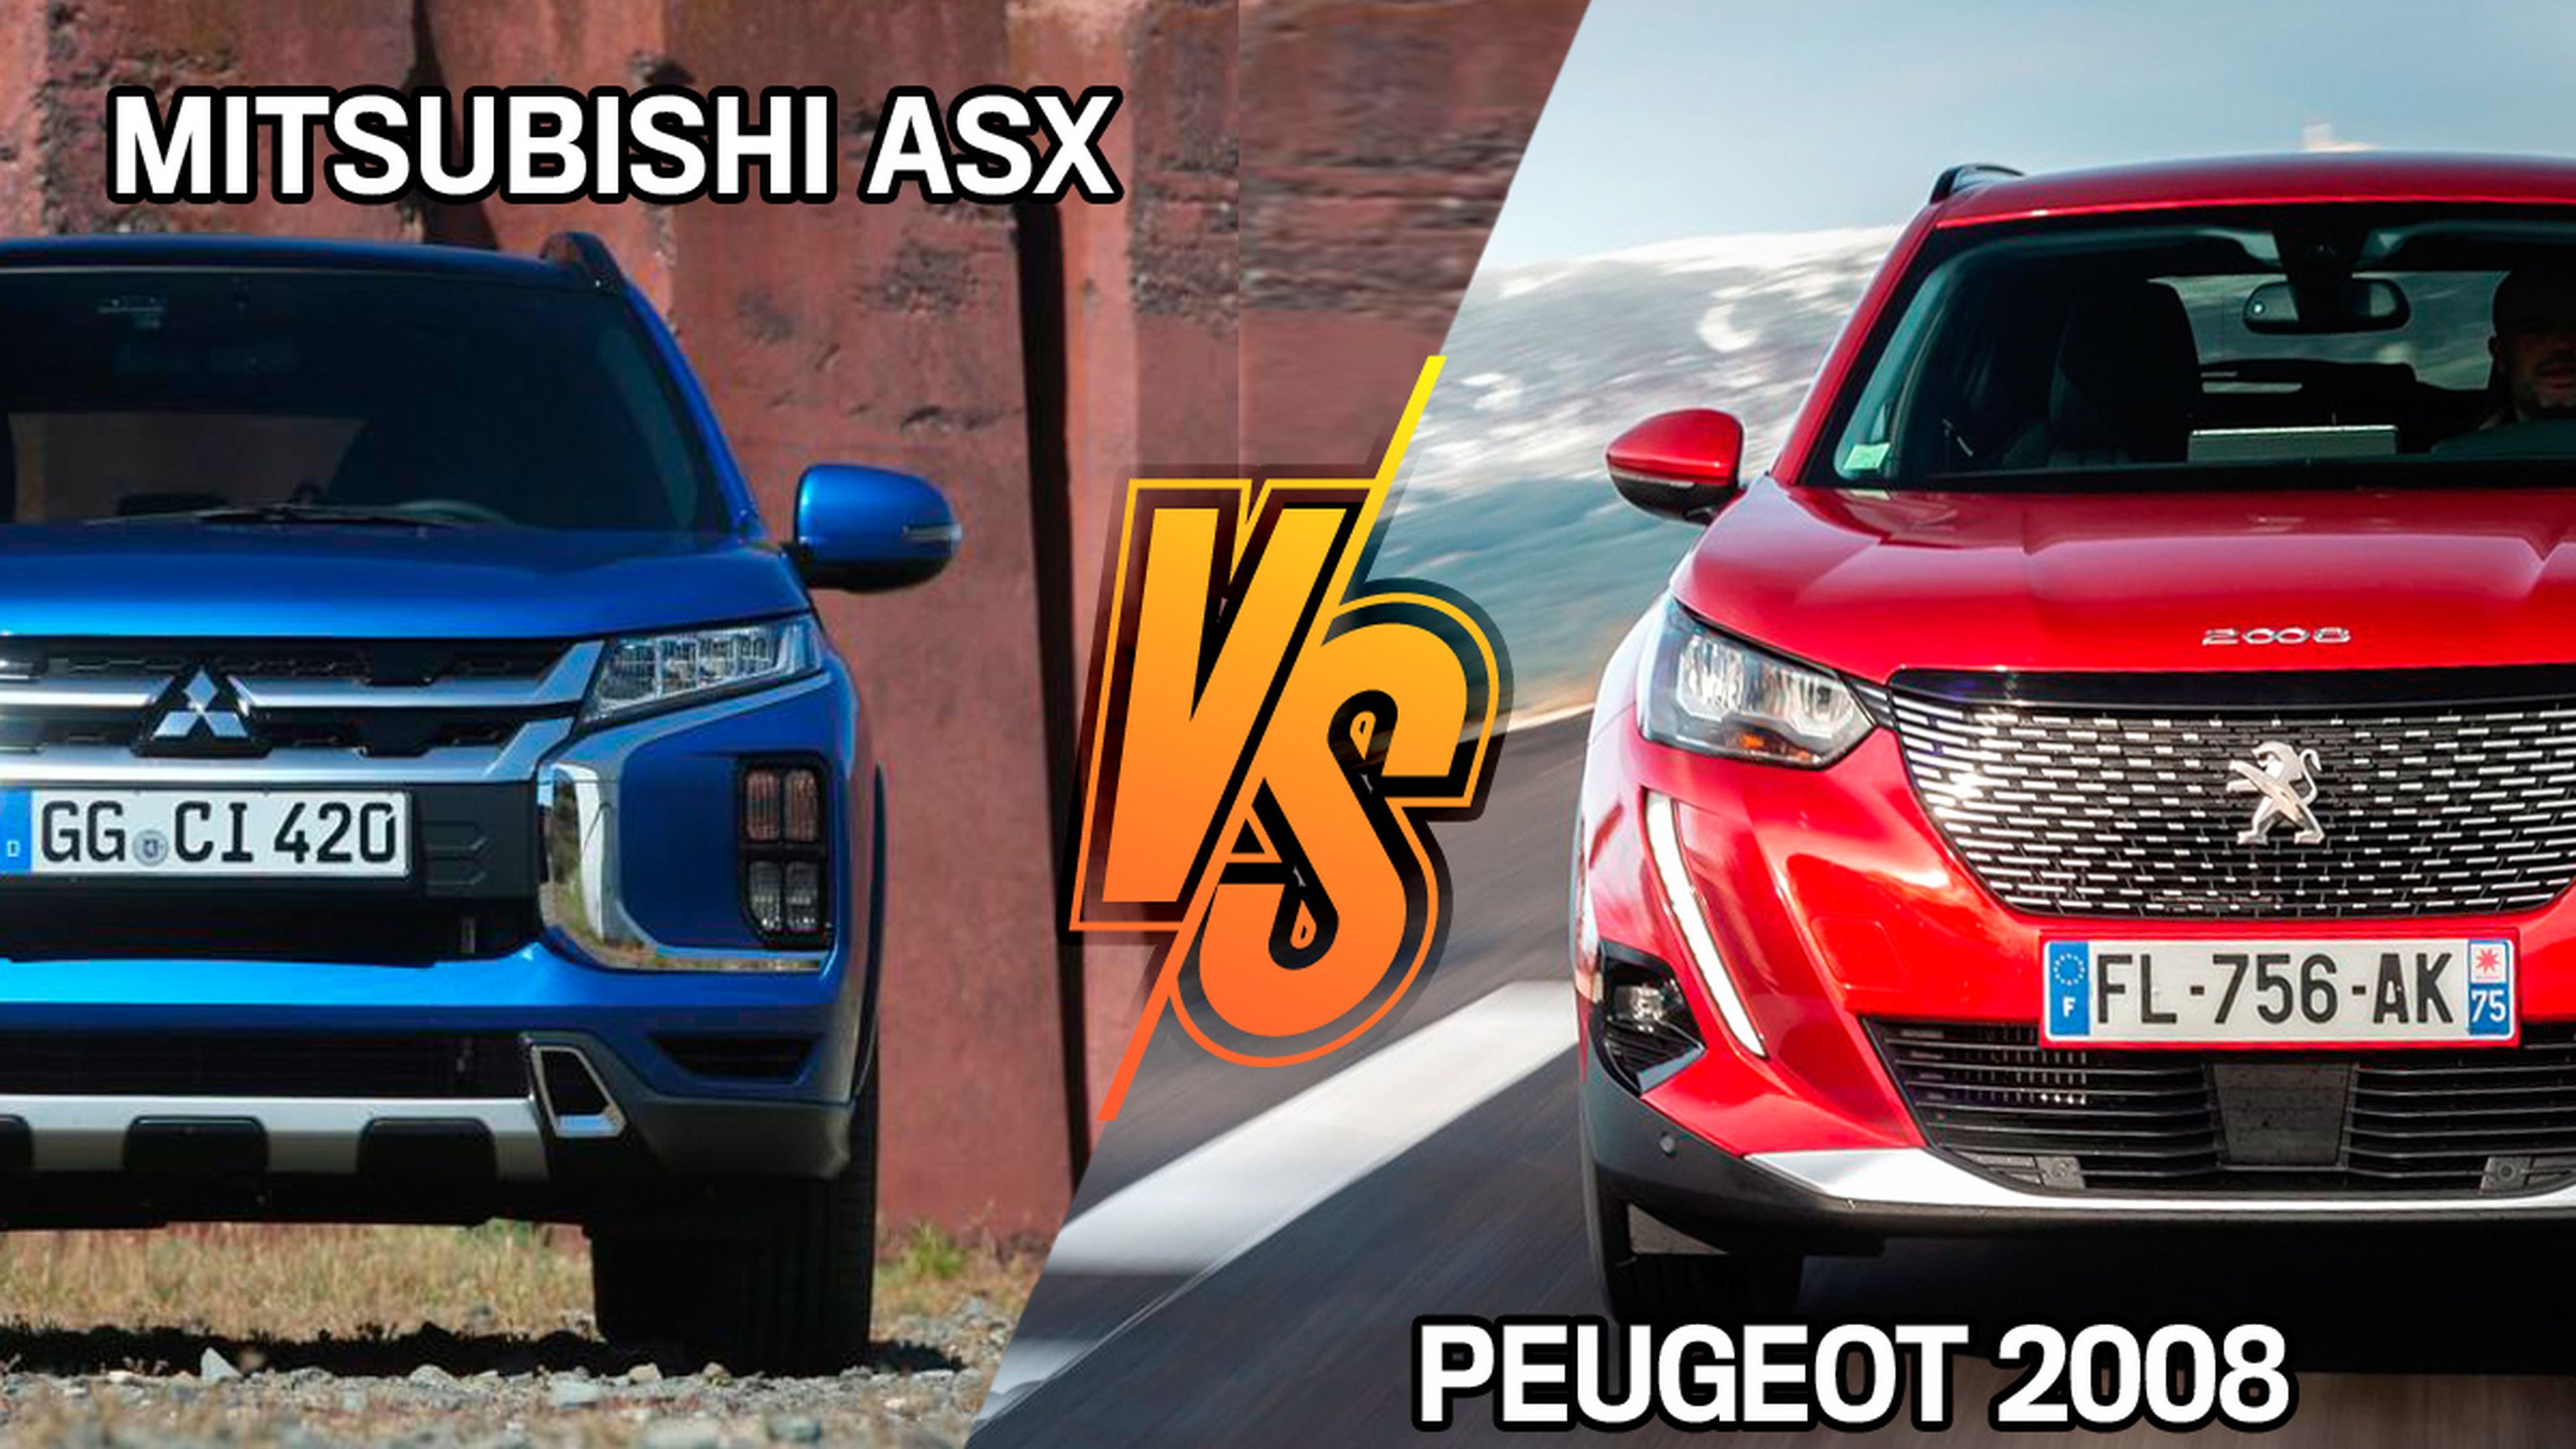 Peugeot 2008 o Mitsubishi ASX 2021, ¿cuál comprar?